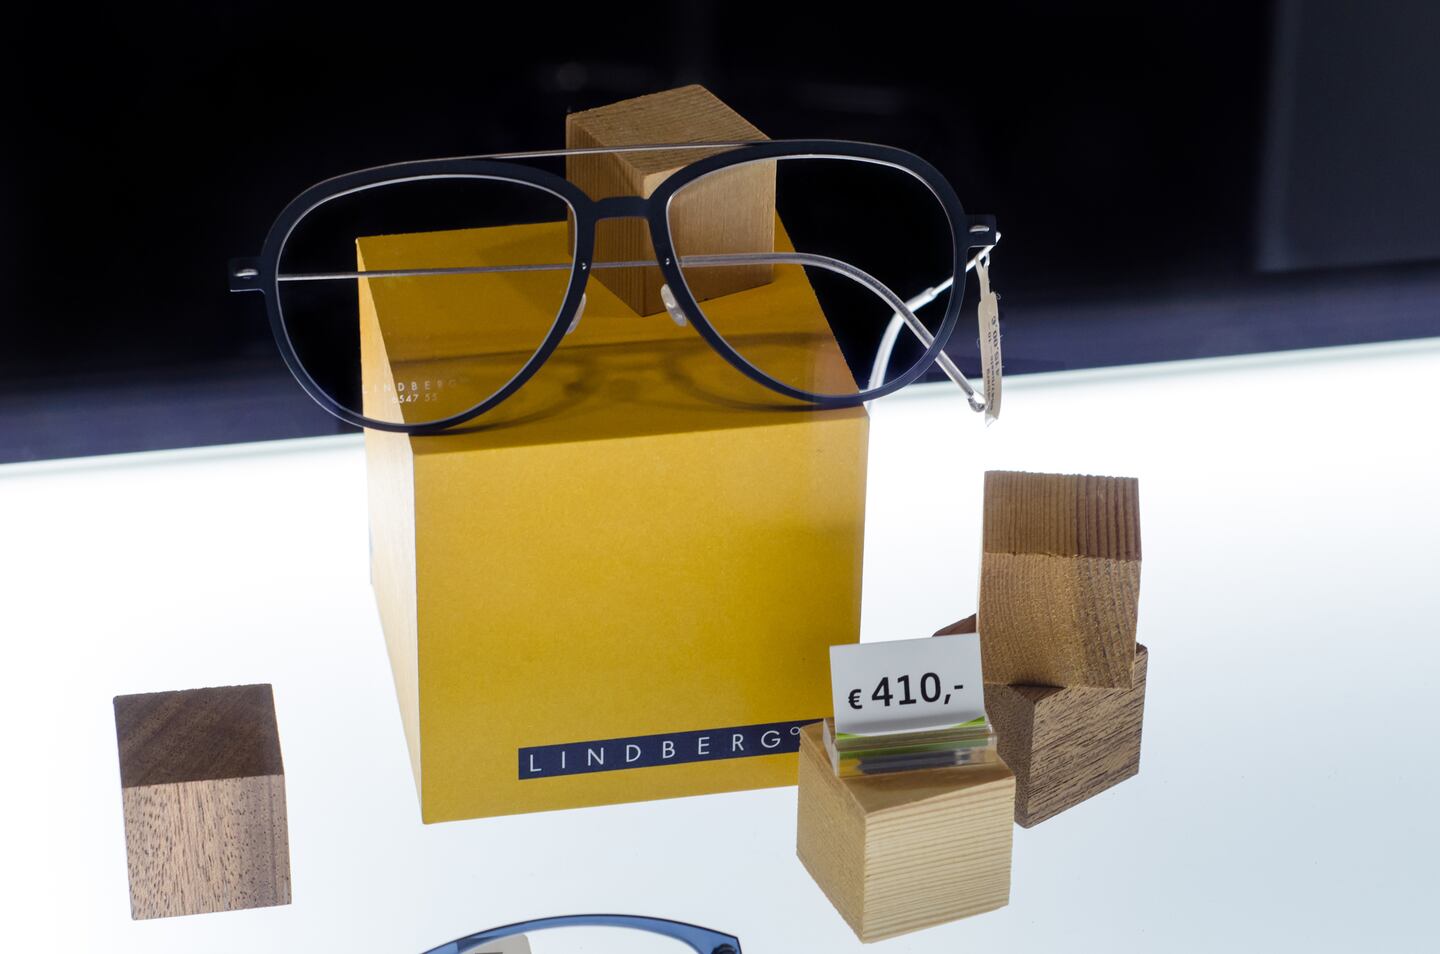 Lindberg glasses. Shutterstock.